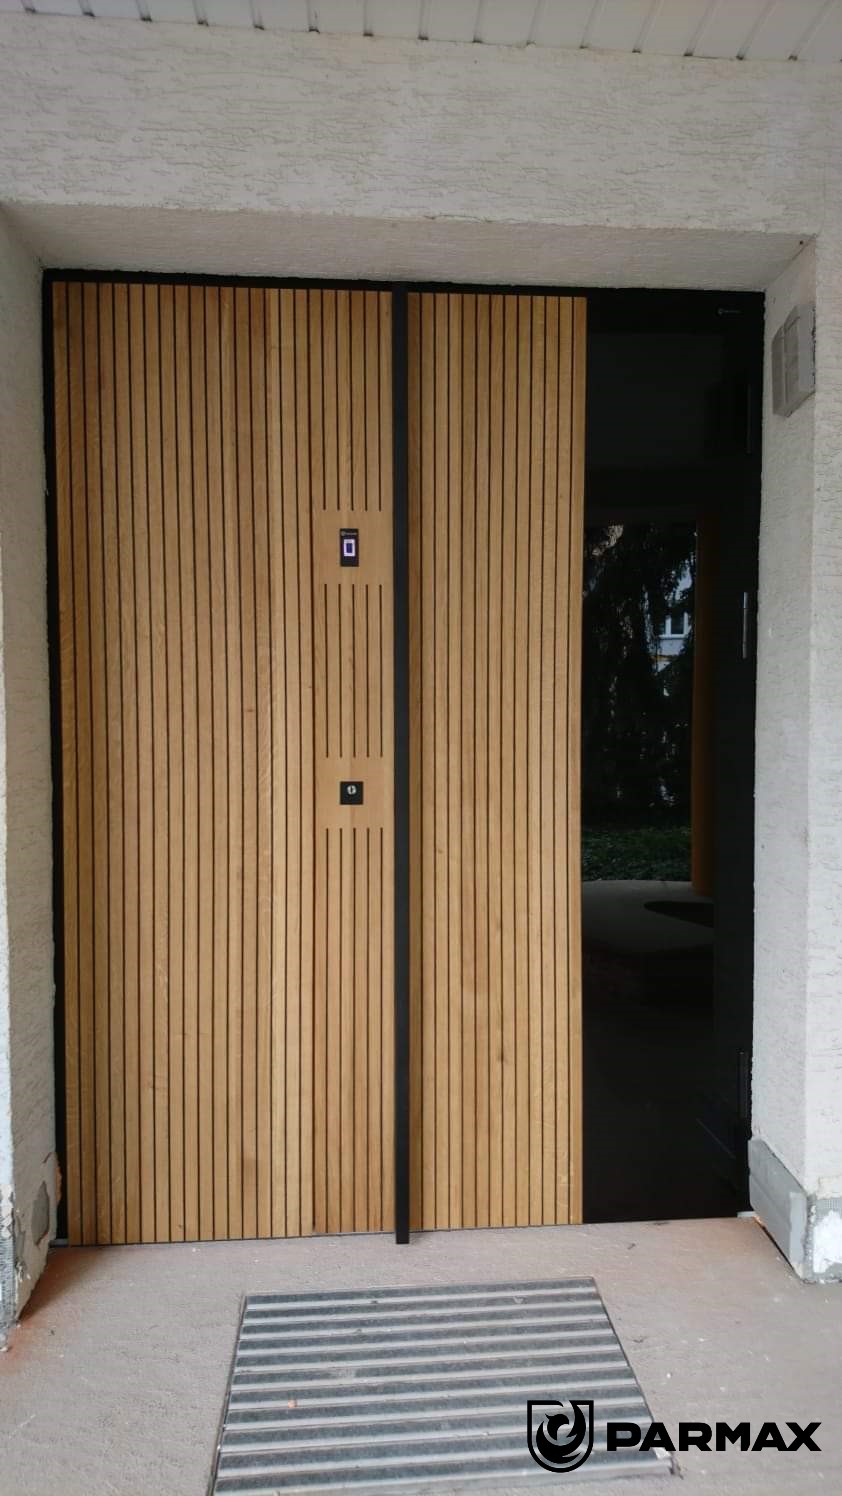 Drzwi parmax wood